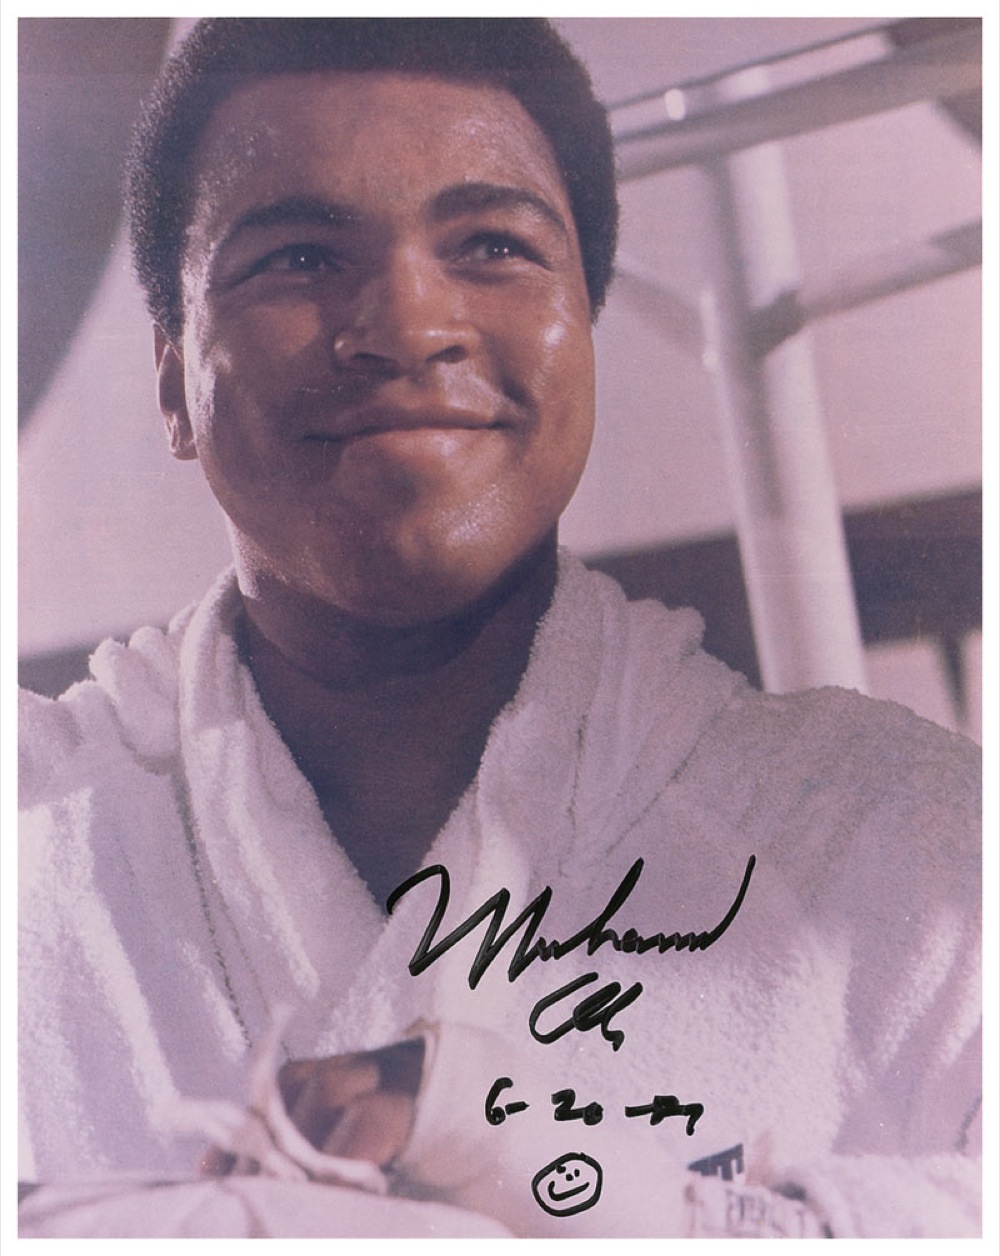 Lot #1214 Muhammad Ali